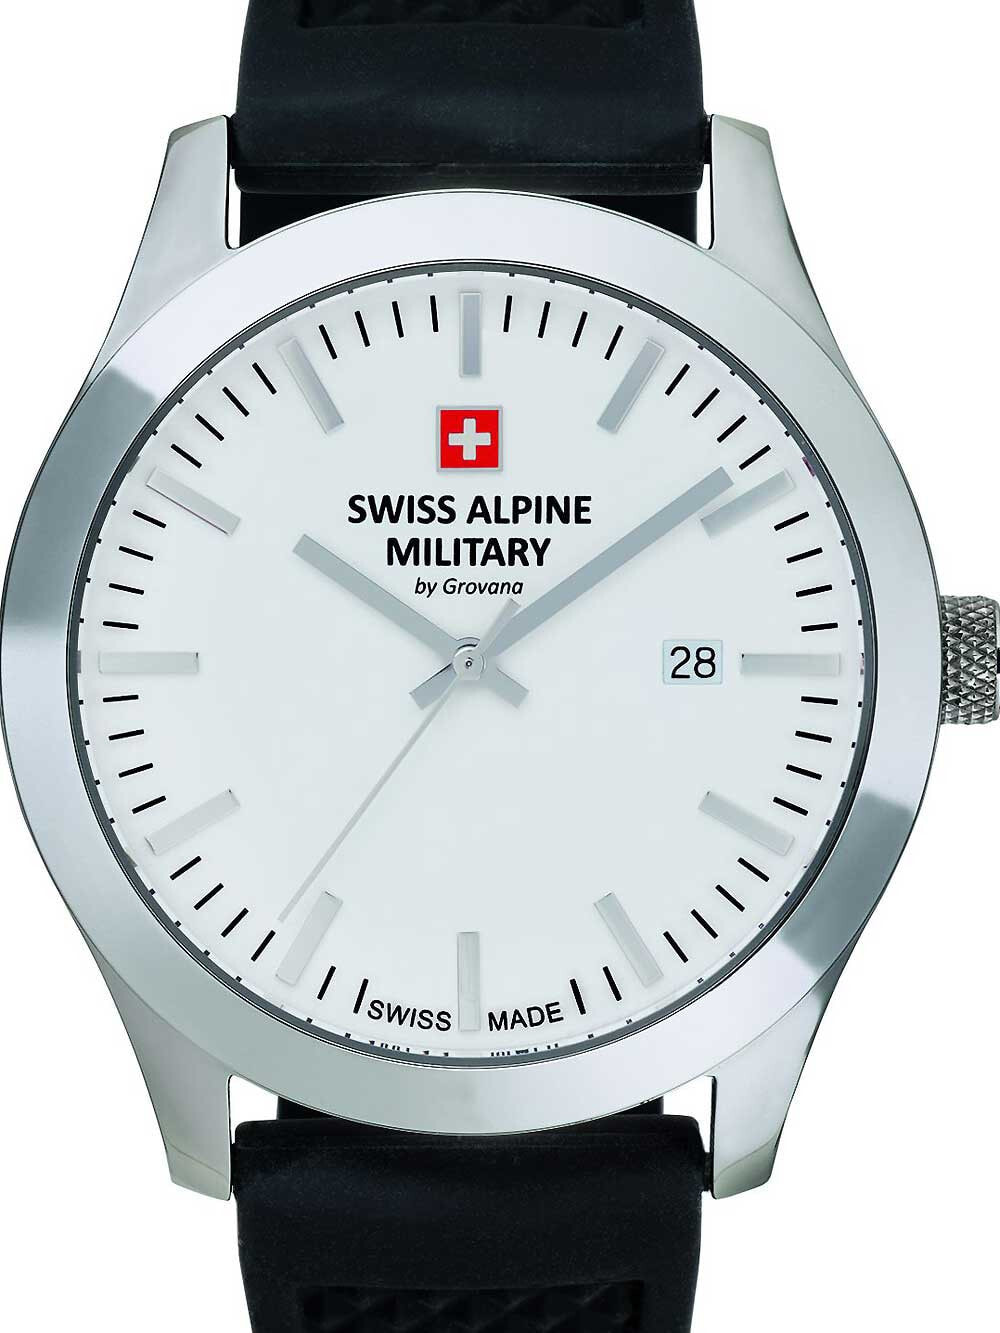 Мужские наручные часы с черным кожаным ремешком Swiss Alpine Military 7055.1833 sport mens 43mm 10ATM